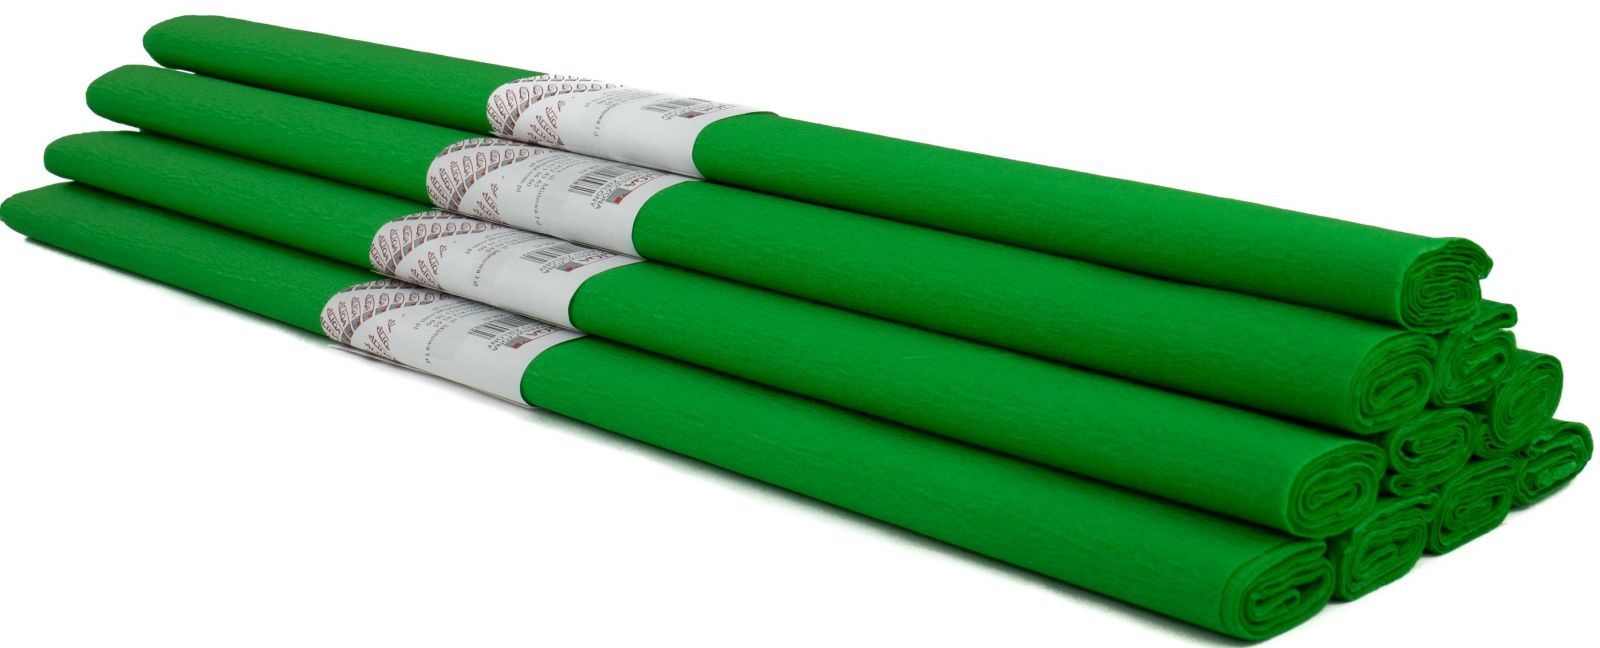 Krepový papír 200x50cm - Zelená tráva